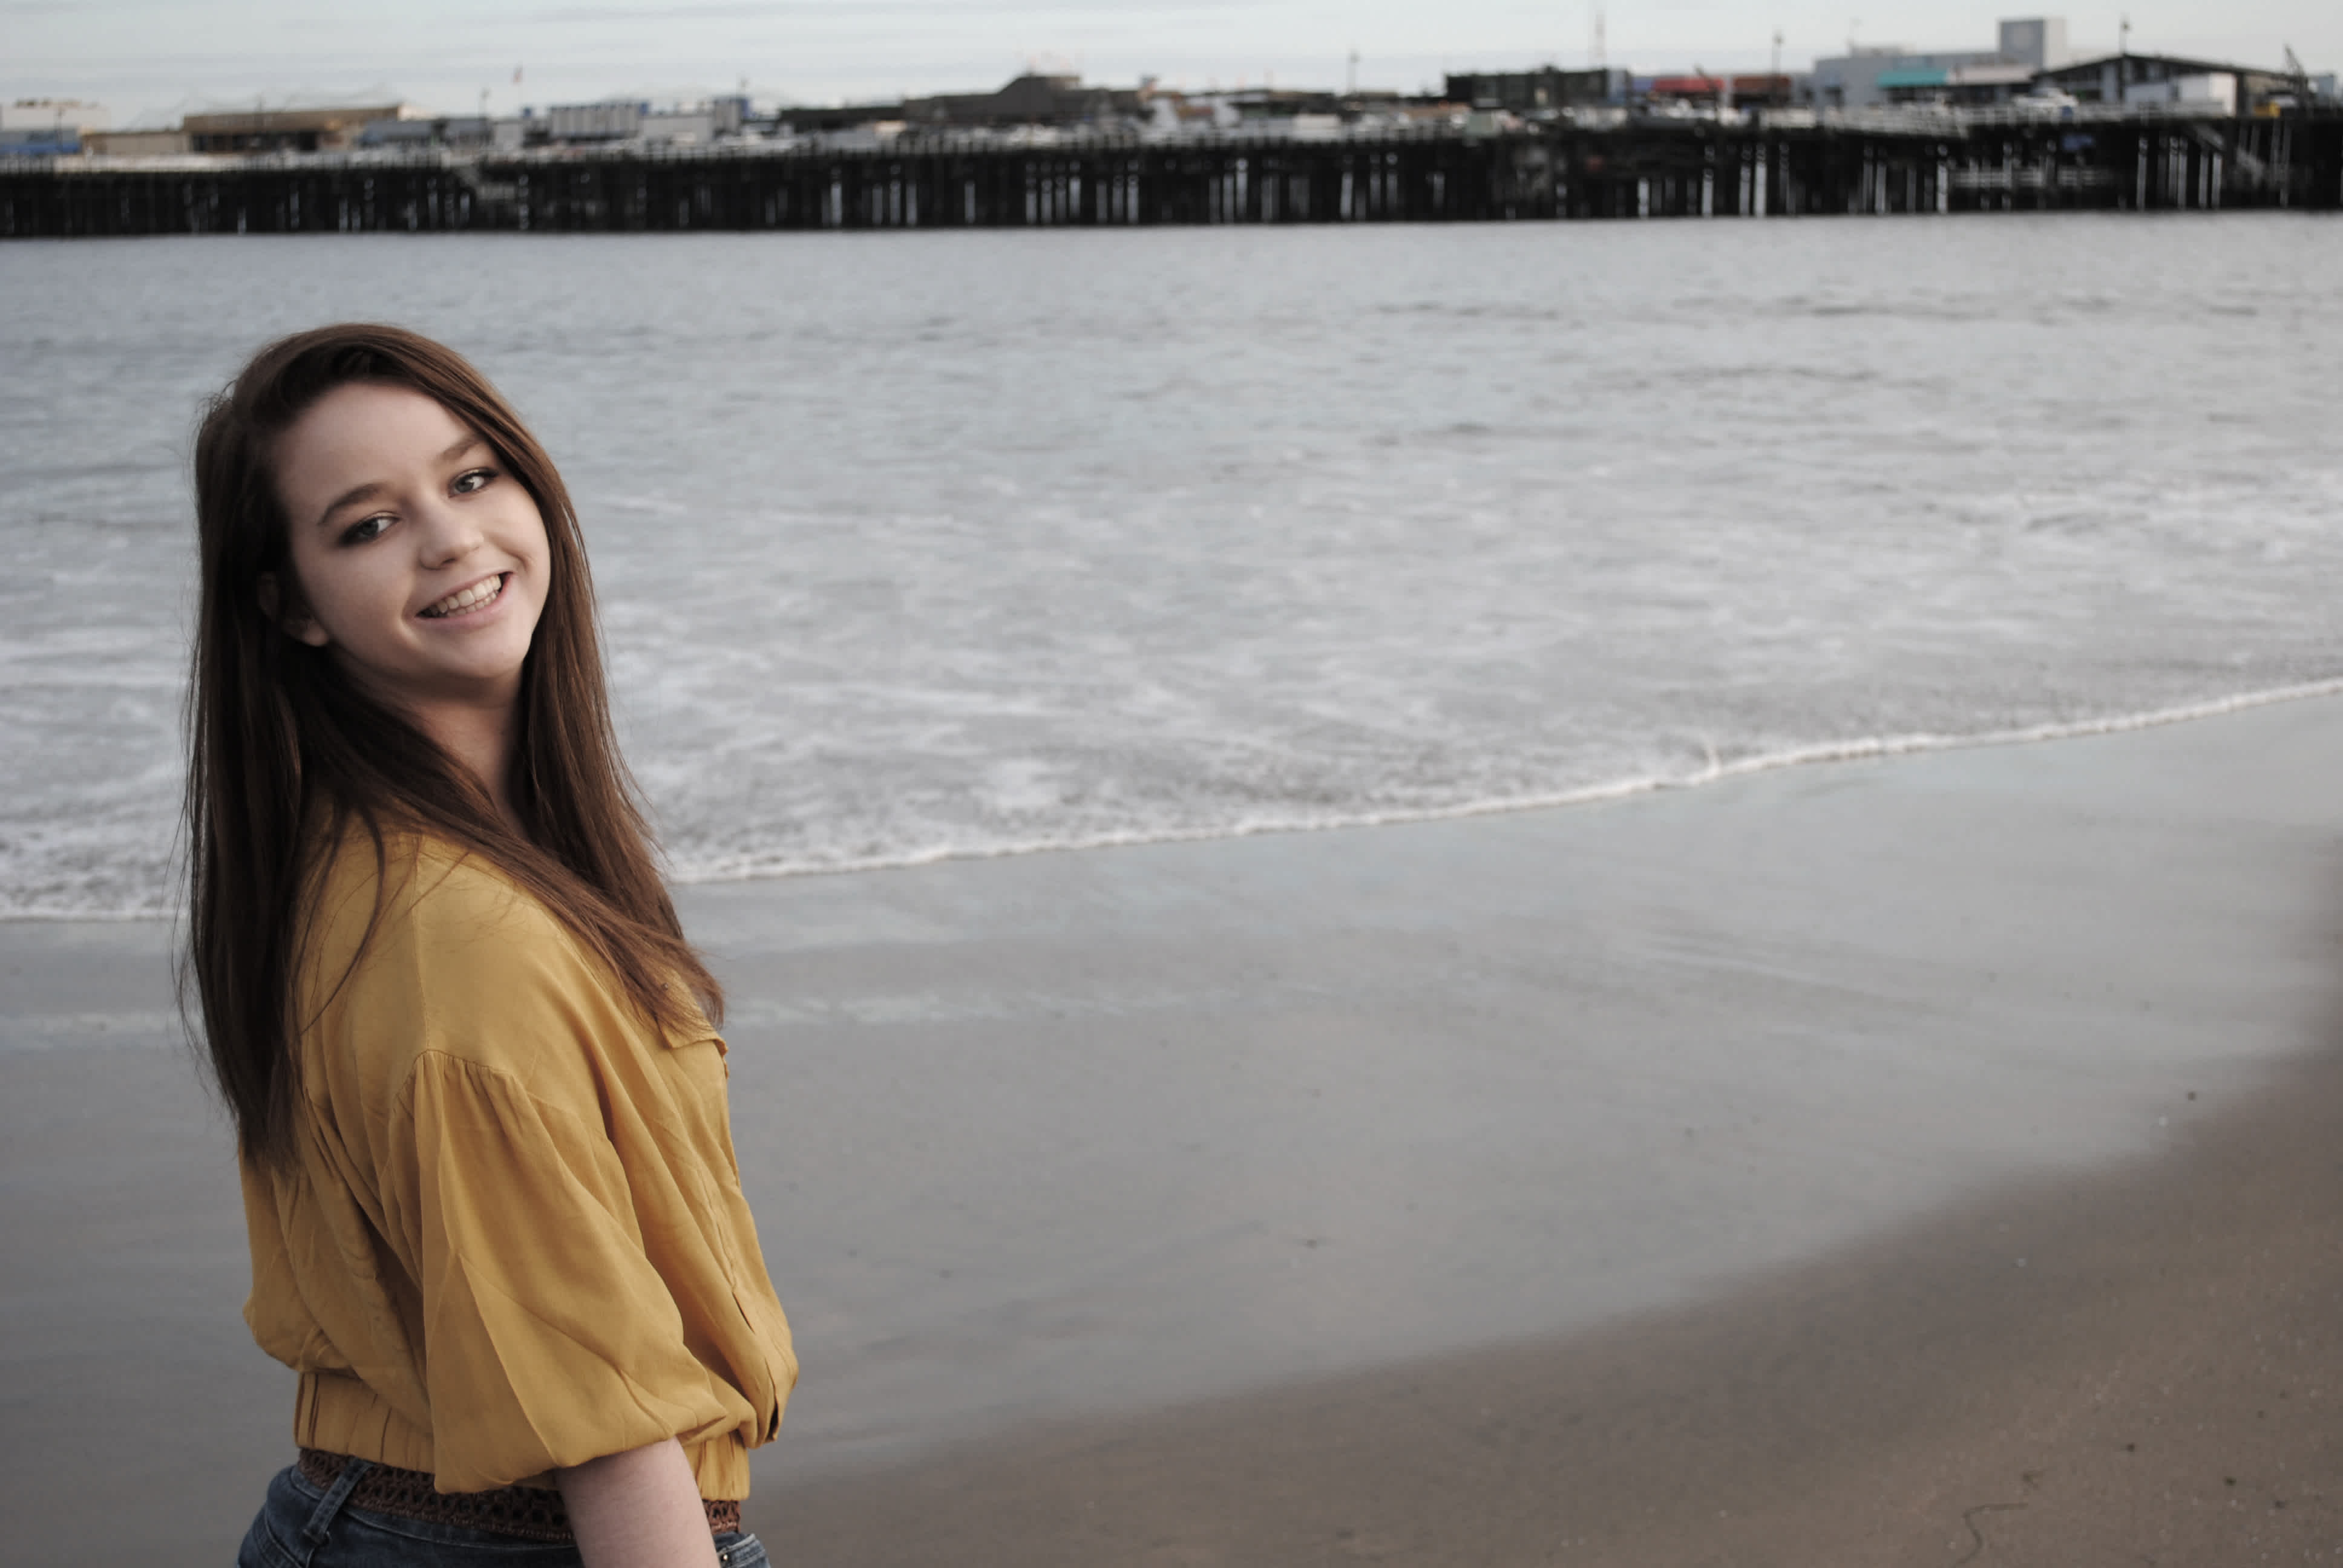 Girl in front of ocean and pier. 